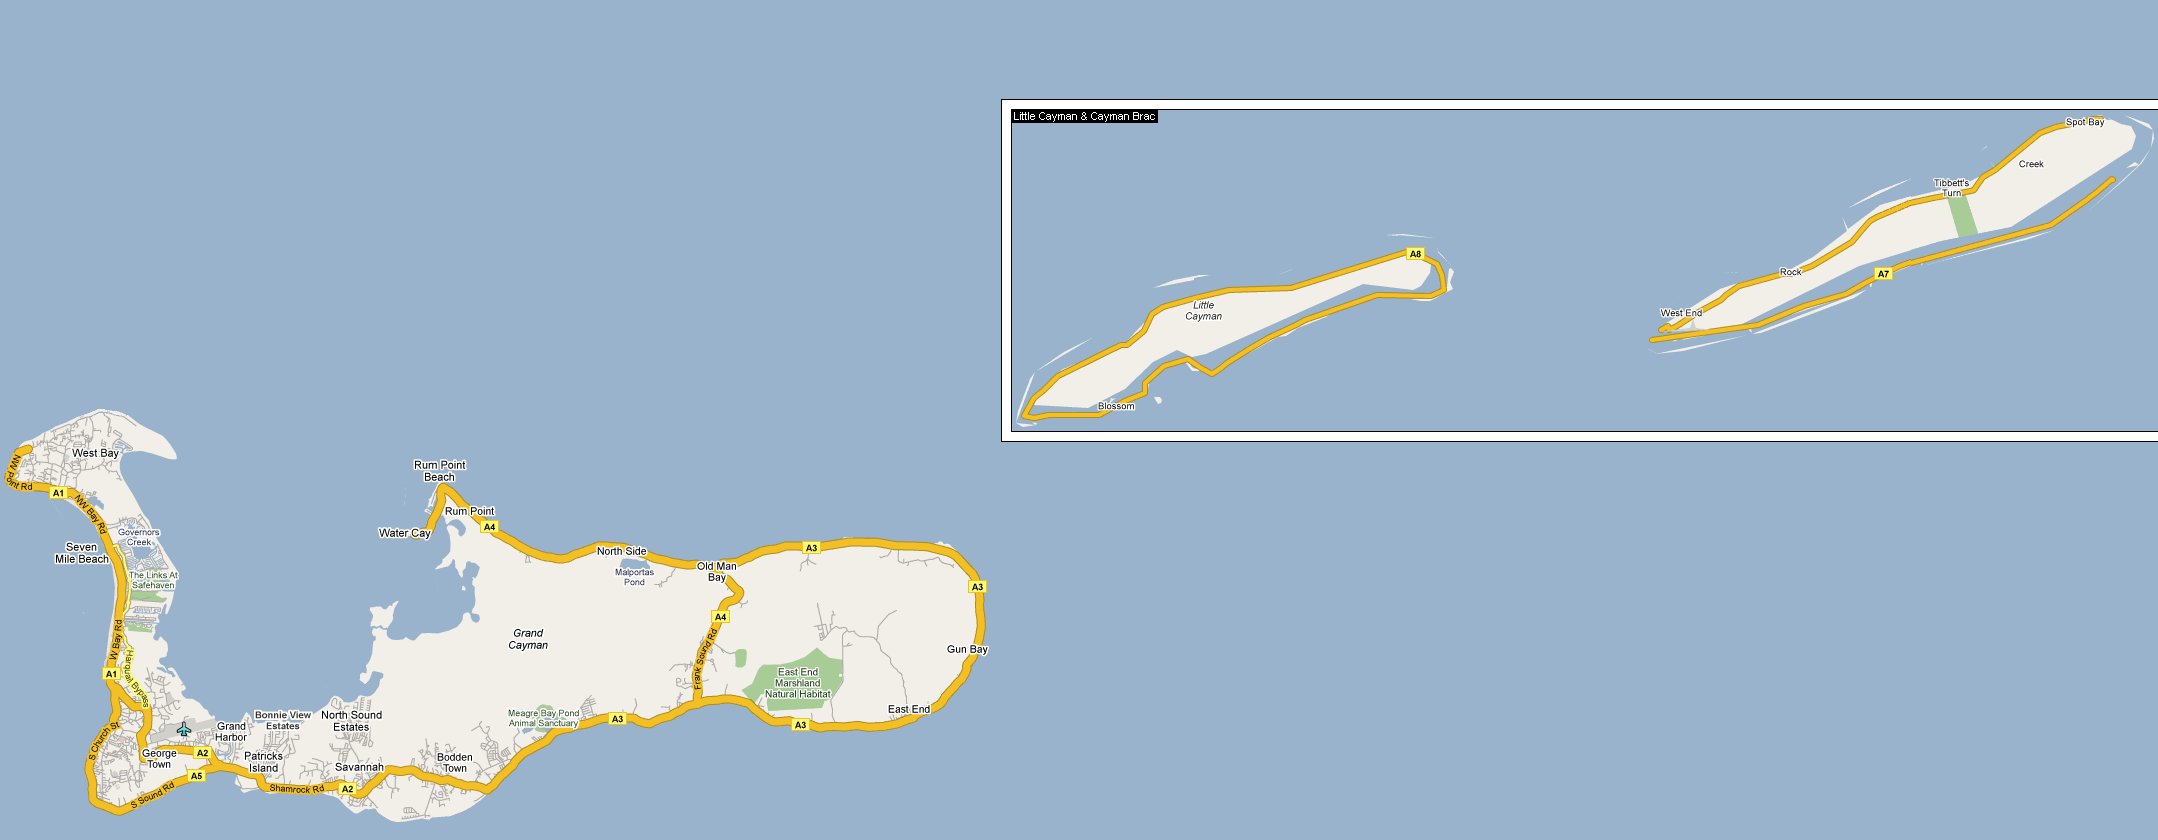 Latitude cayman islands